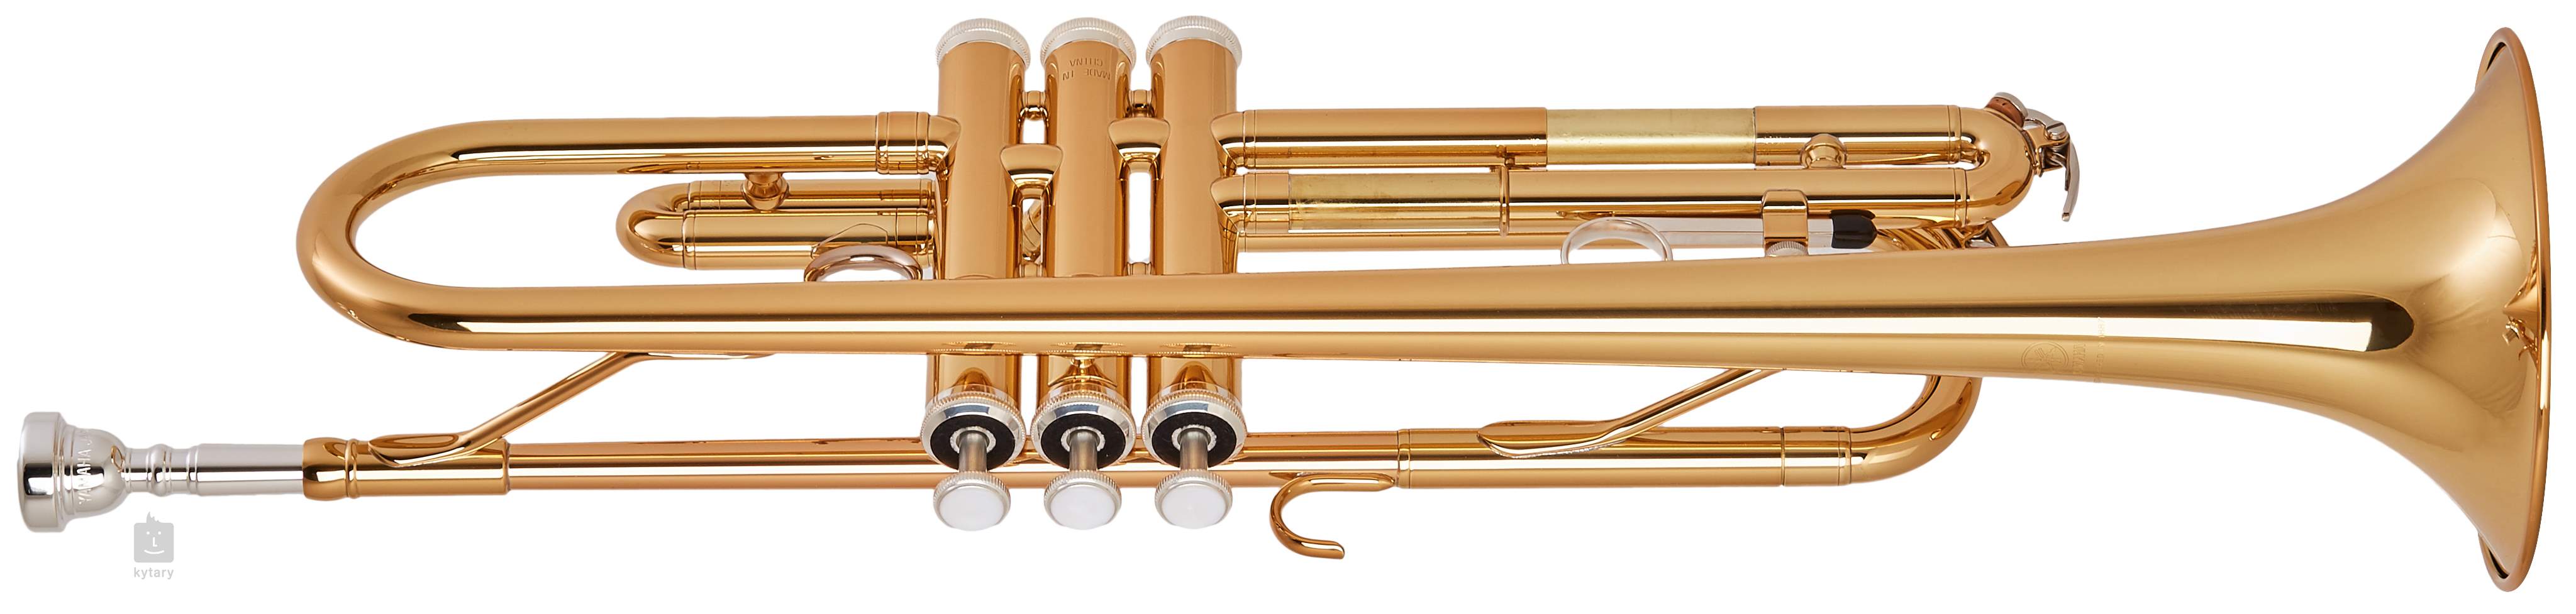 Yamaha: Comparatif des modèles de trompettes en SiB